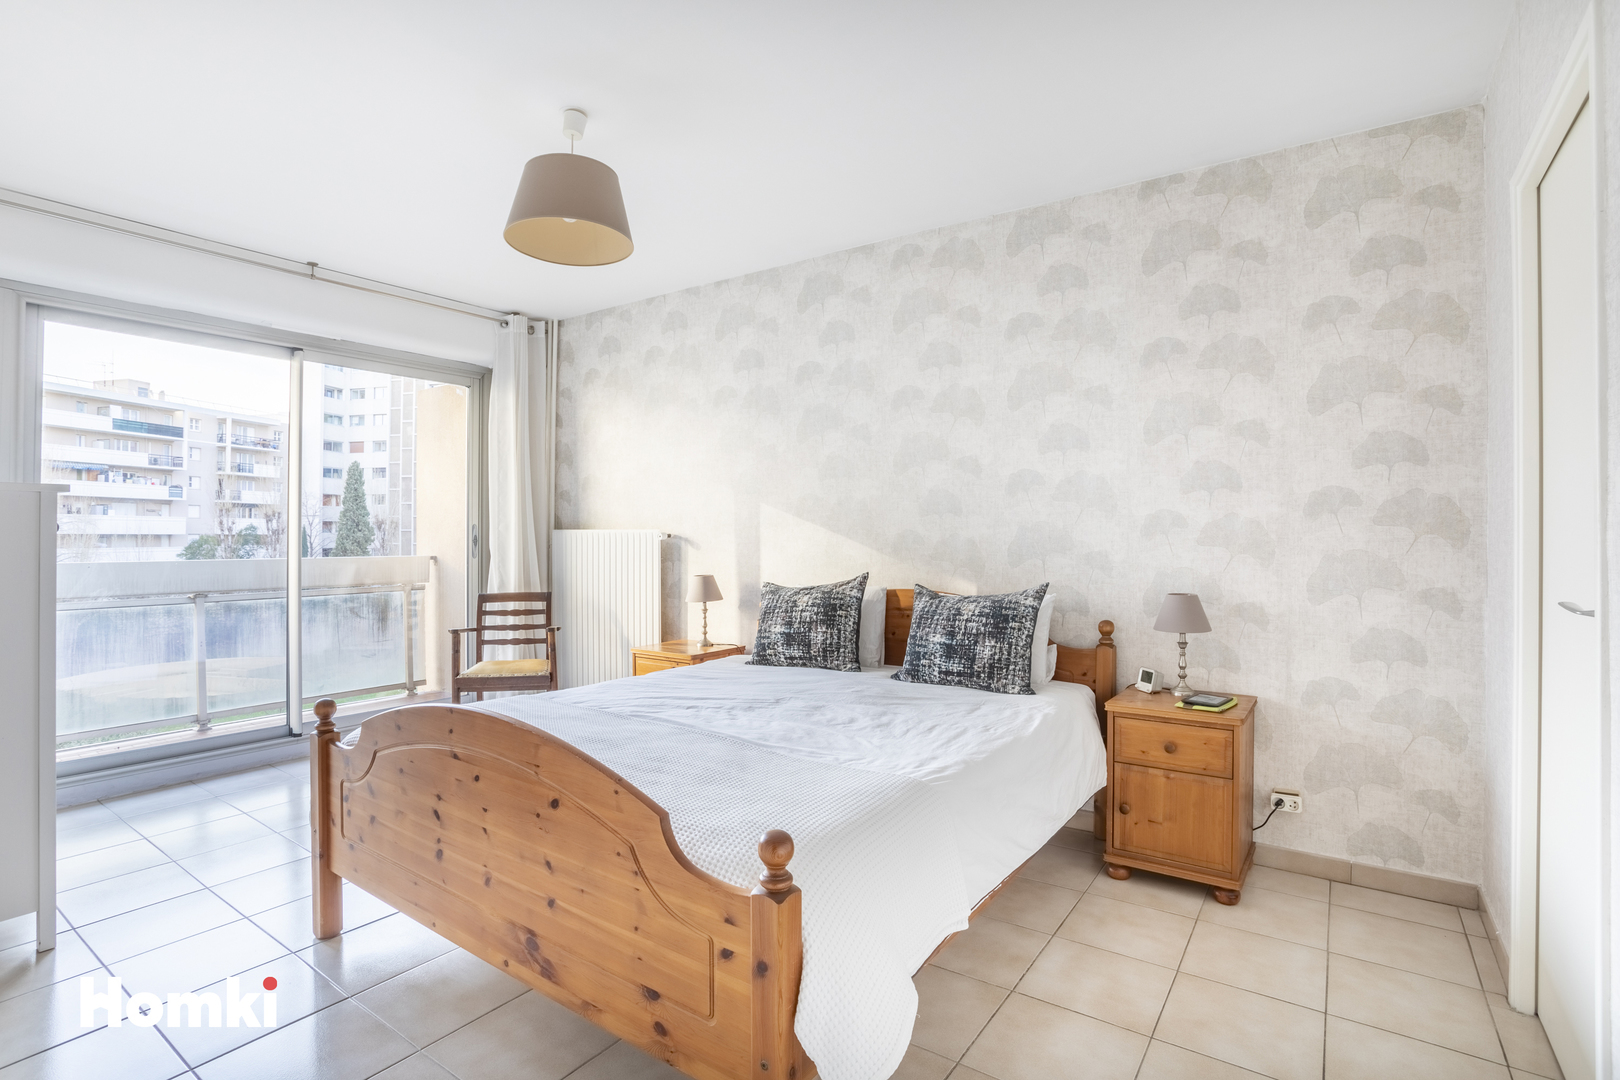 Homki - Vente Appartement  de 90.0 m² à Marseille 13001